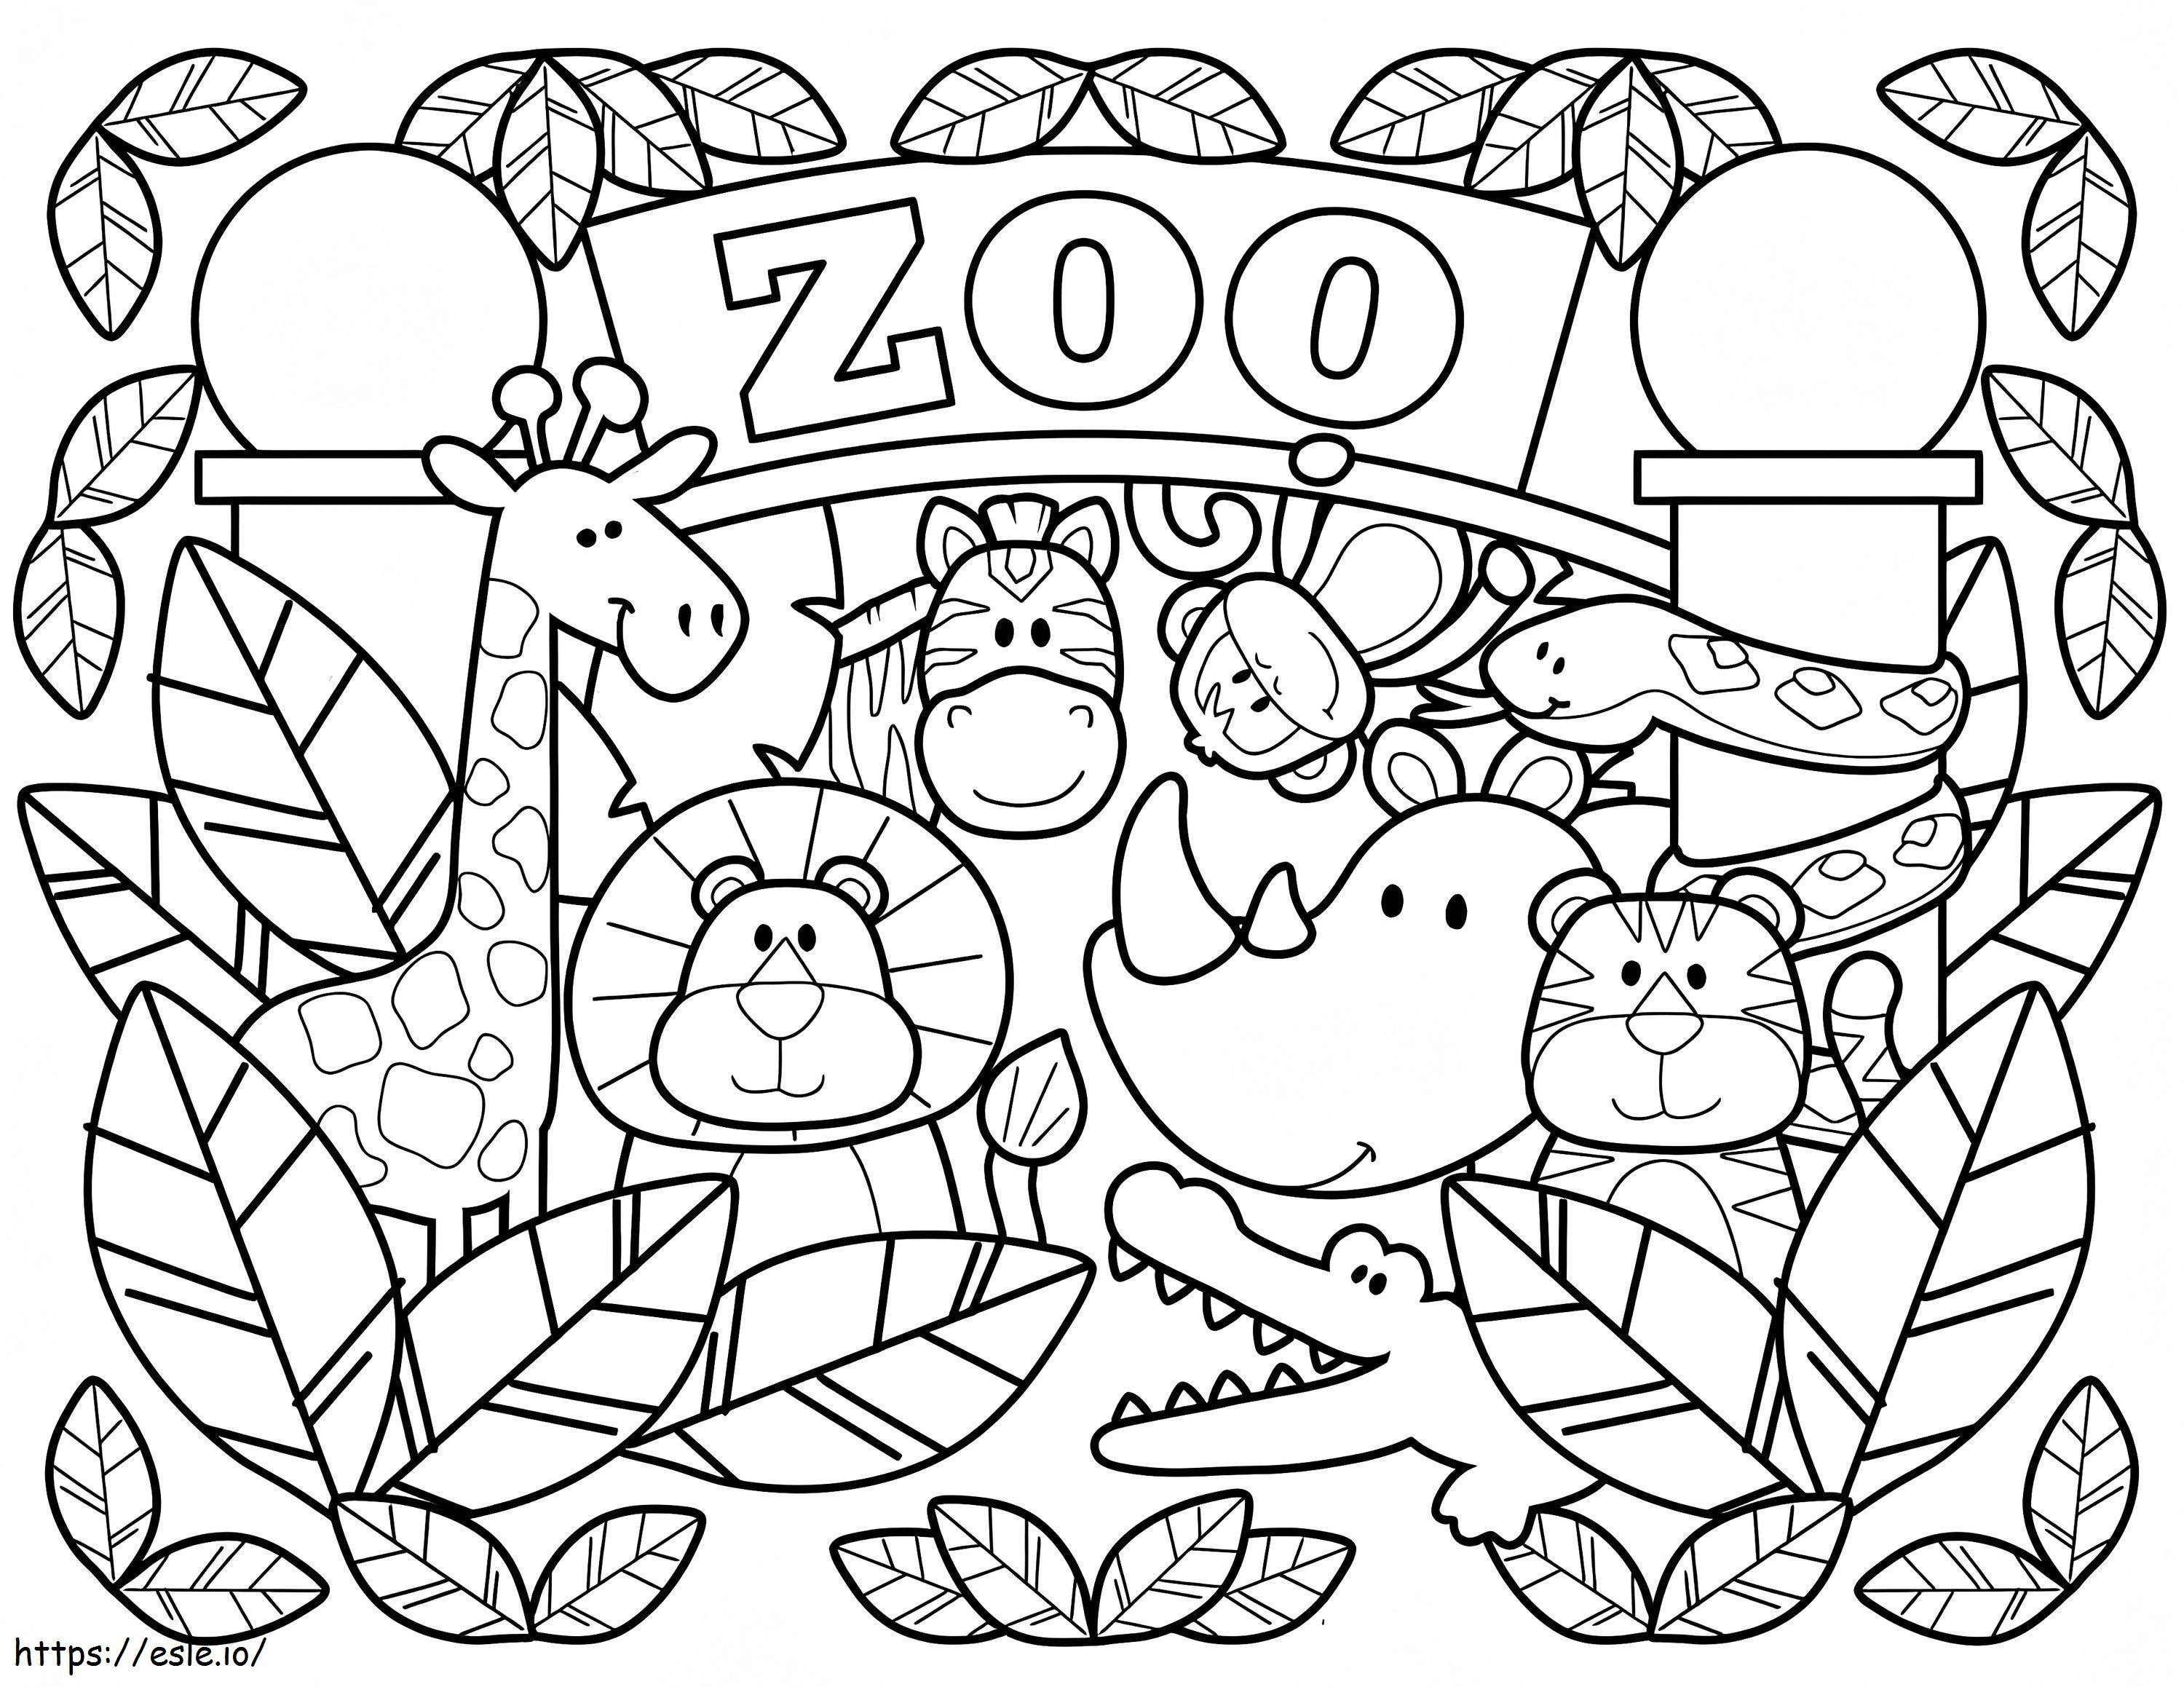 Coloriage Adorable zoo à imprimer dessin